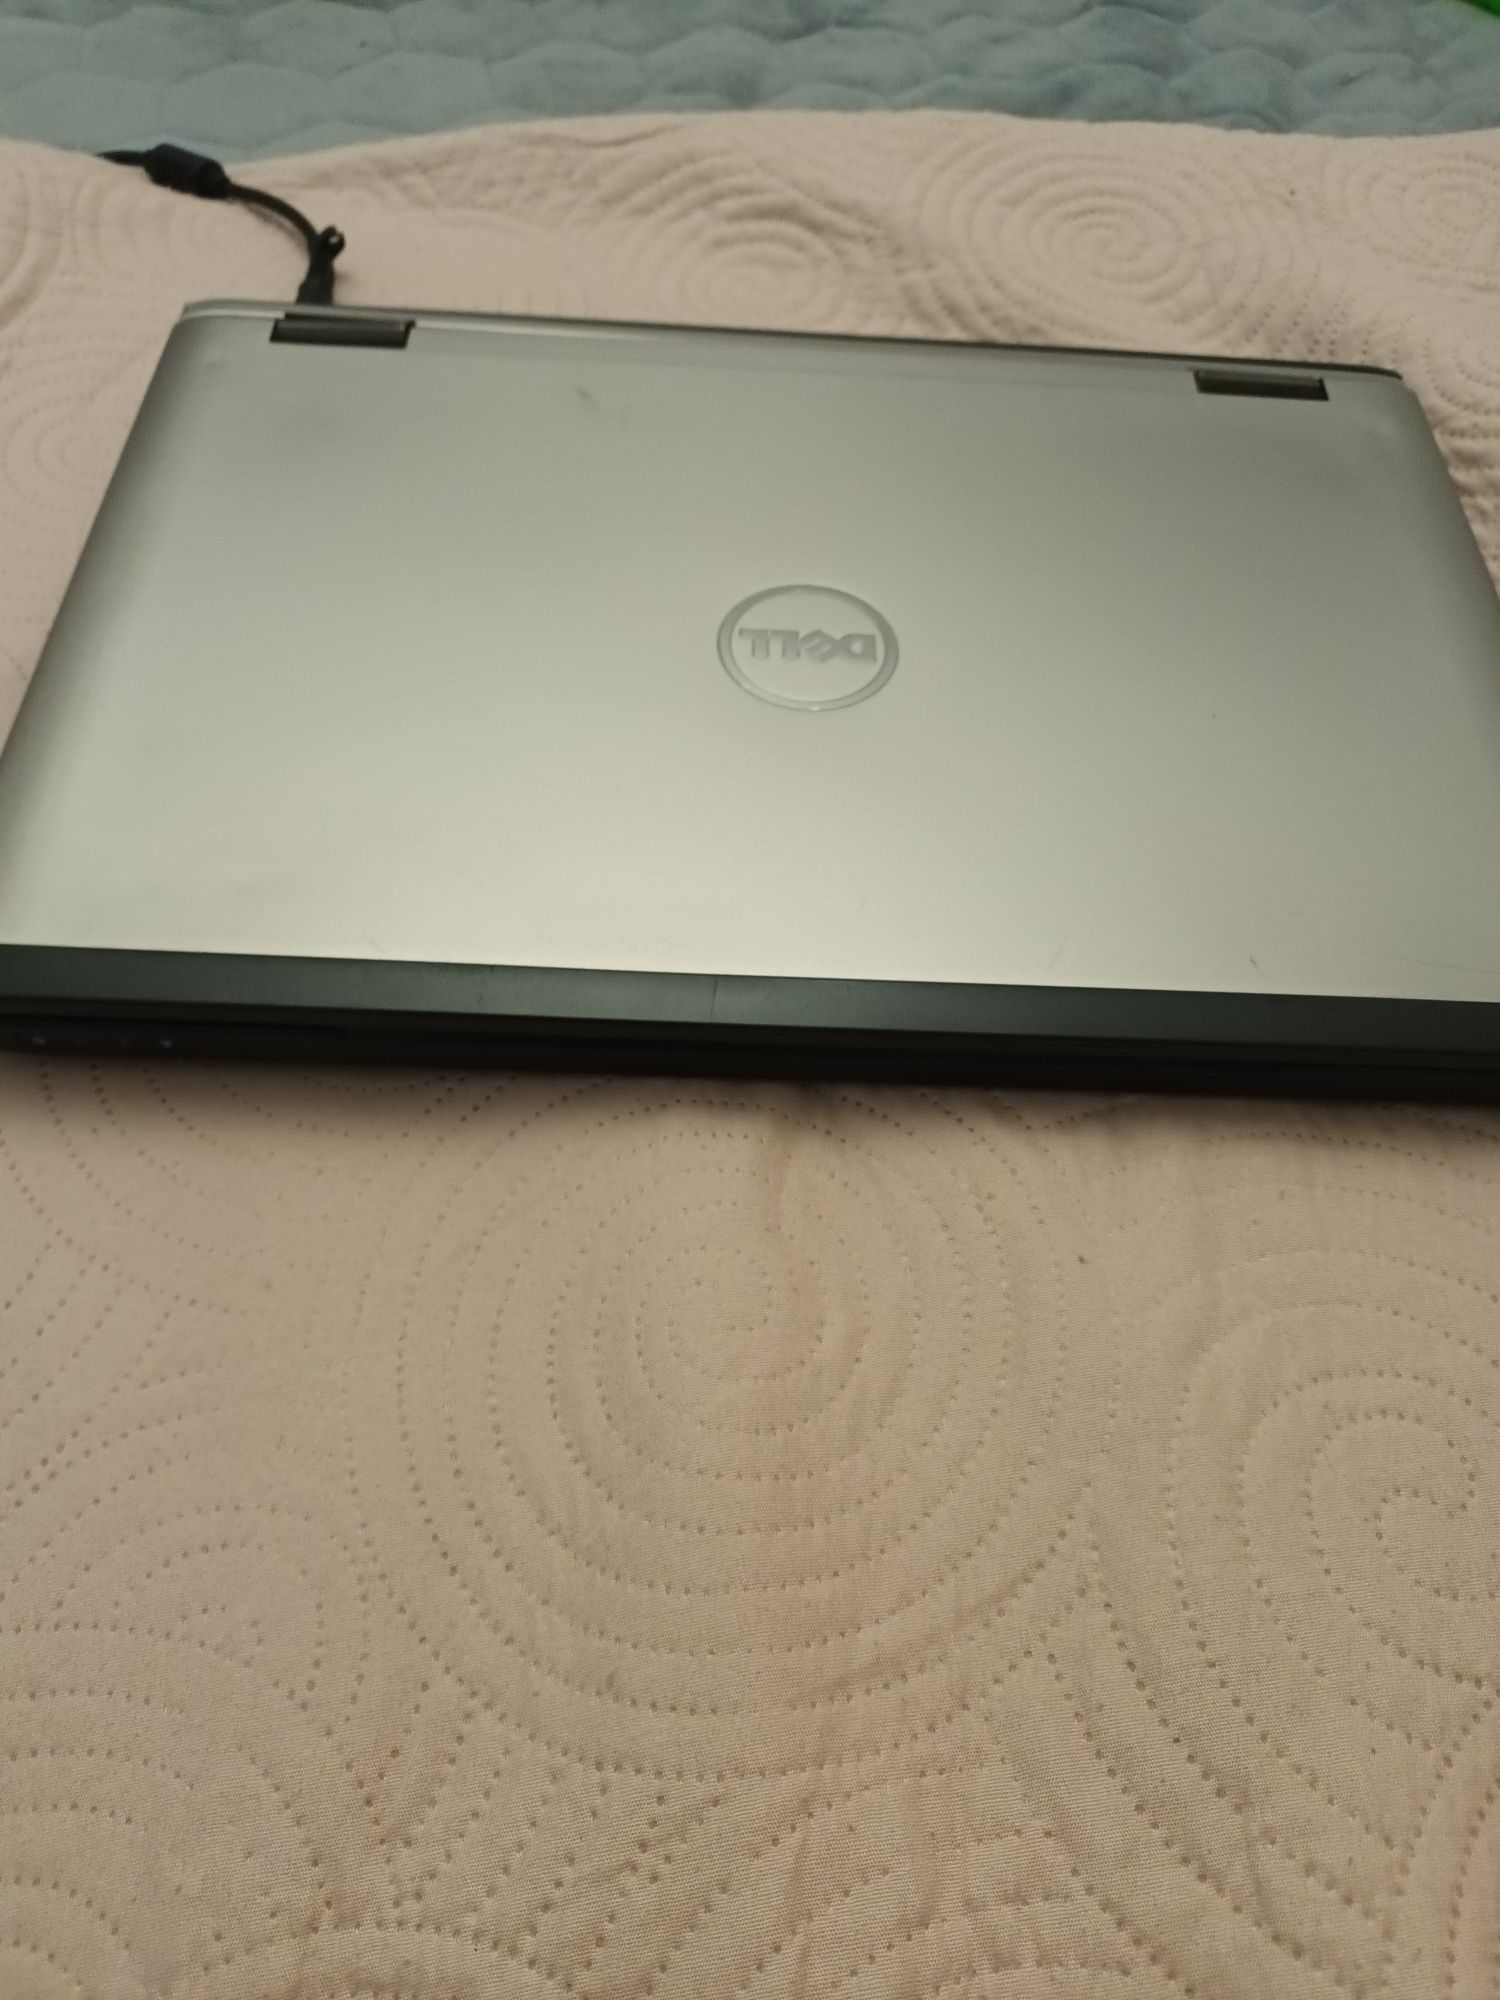 Laptop Dell Vostro 3550 Intel Core i3